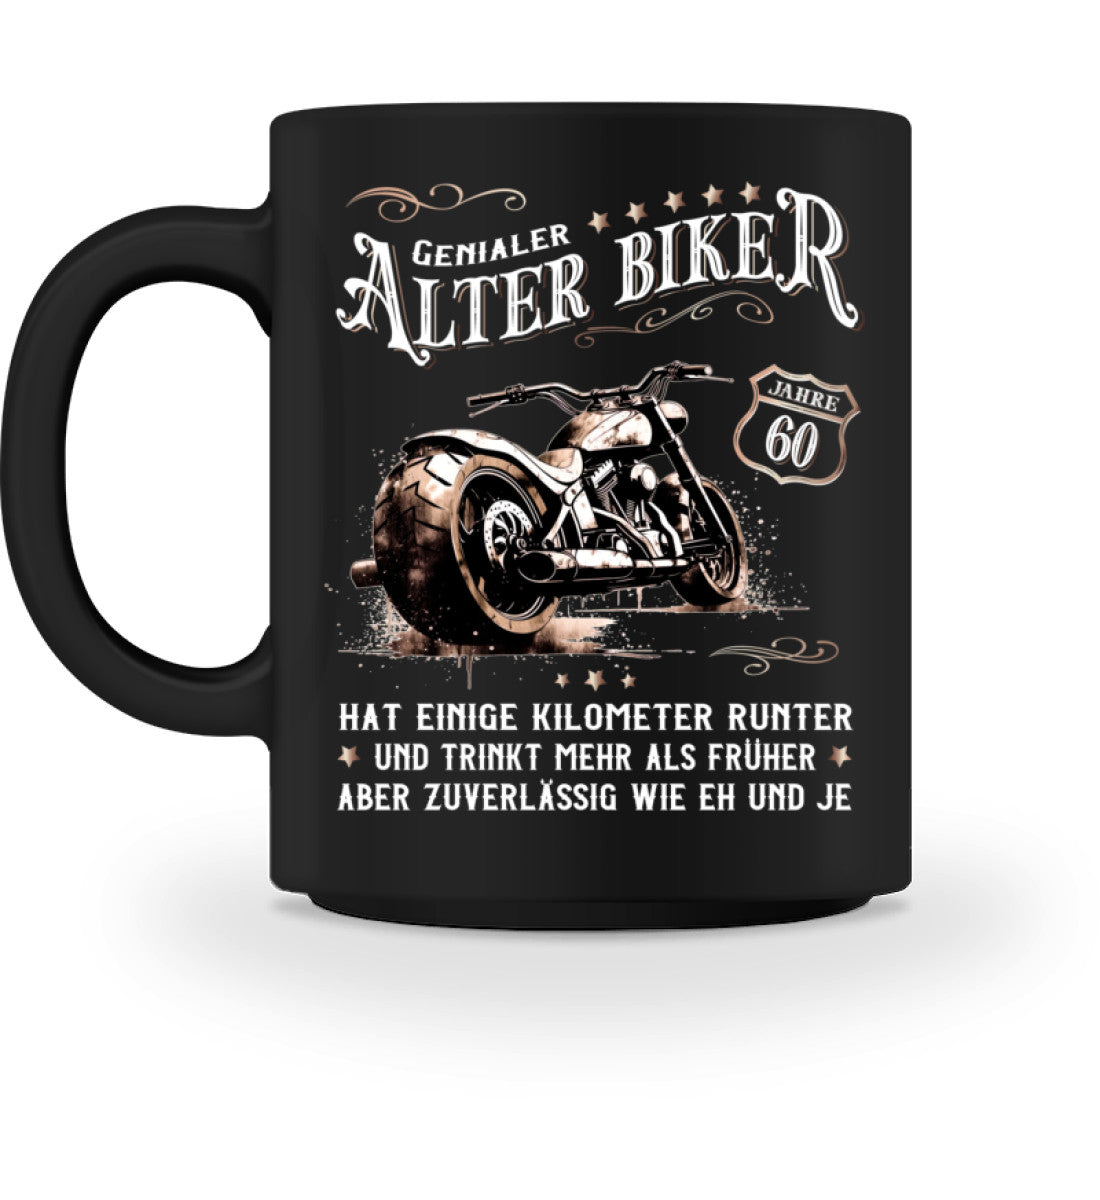 Eine Biker Geburtstags-Tasse für Motorradfahrer, von Wingbikers, mit dem beidseitigen Aufdruck, Alter Biker - 60 Jahre - Einige Kilometer runter, trinkt mehr - aber zuverlässig wie eh und je, in schwarz.